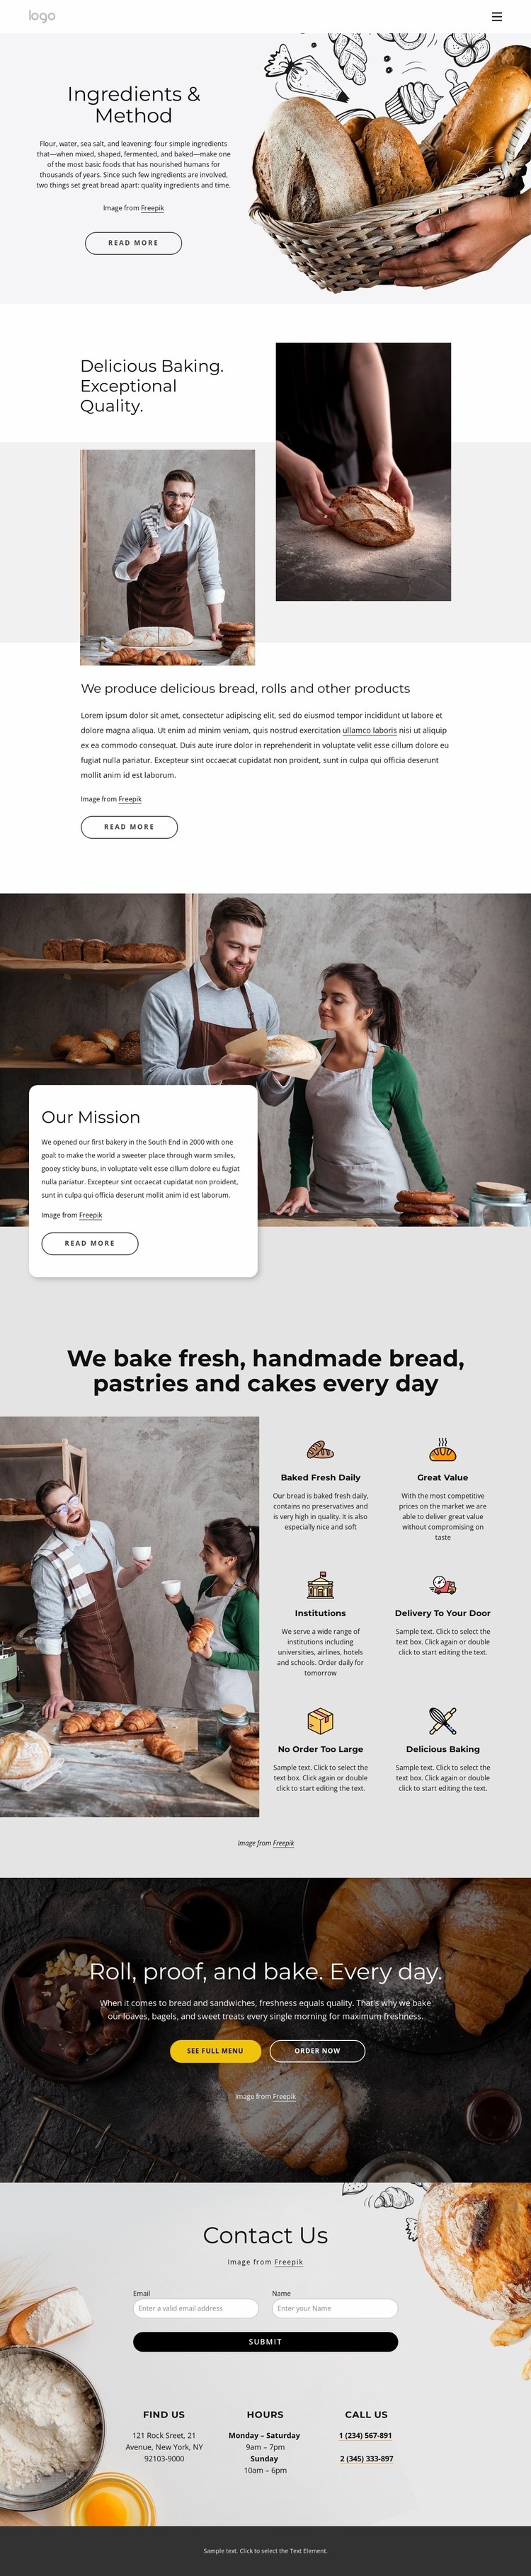 Vi bakar handgjorda bröd Html webbplatsbyggare